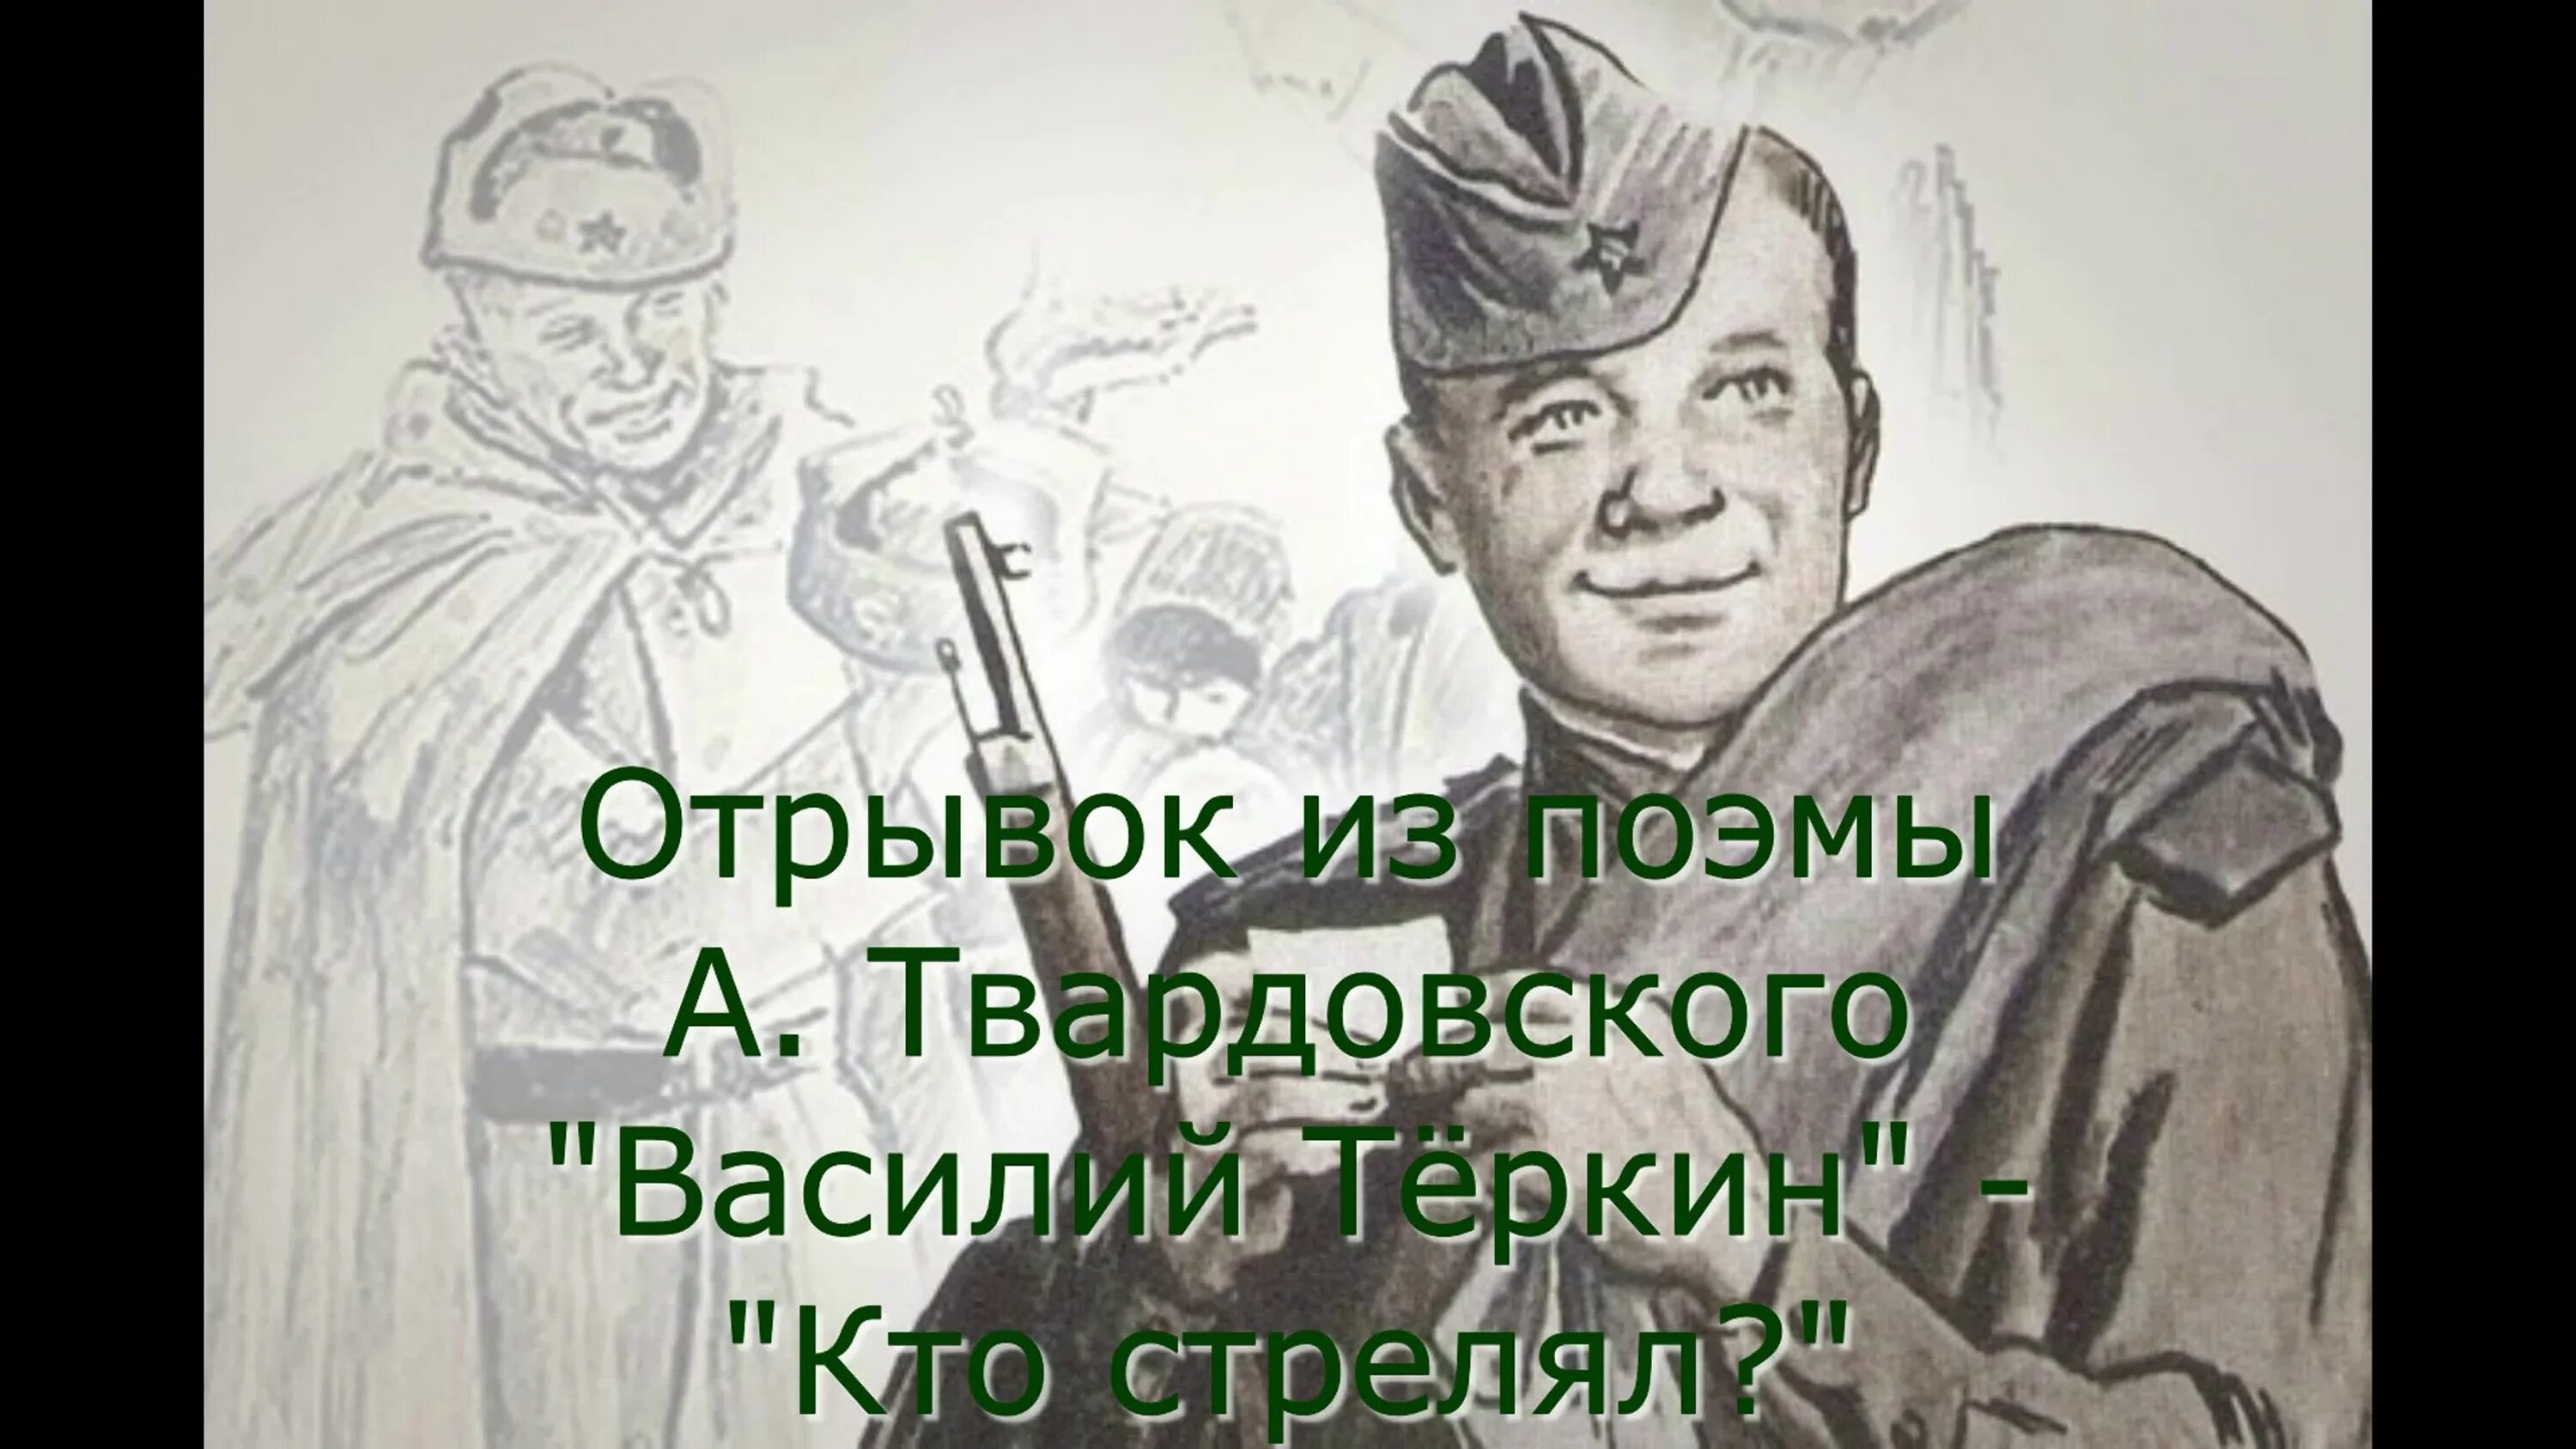 Портрет Василия Теркина. Отрывок из поэмы Твардовского. Прототип теркина